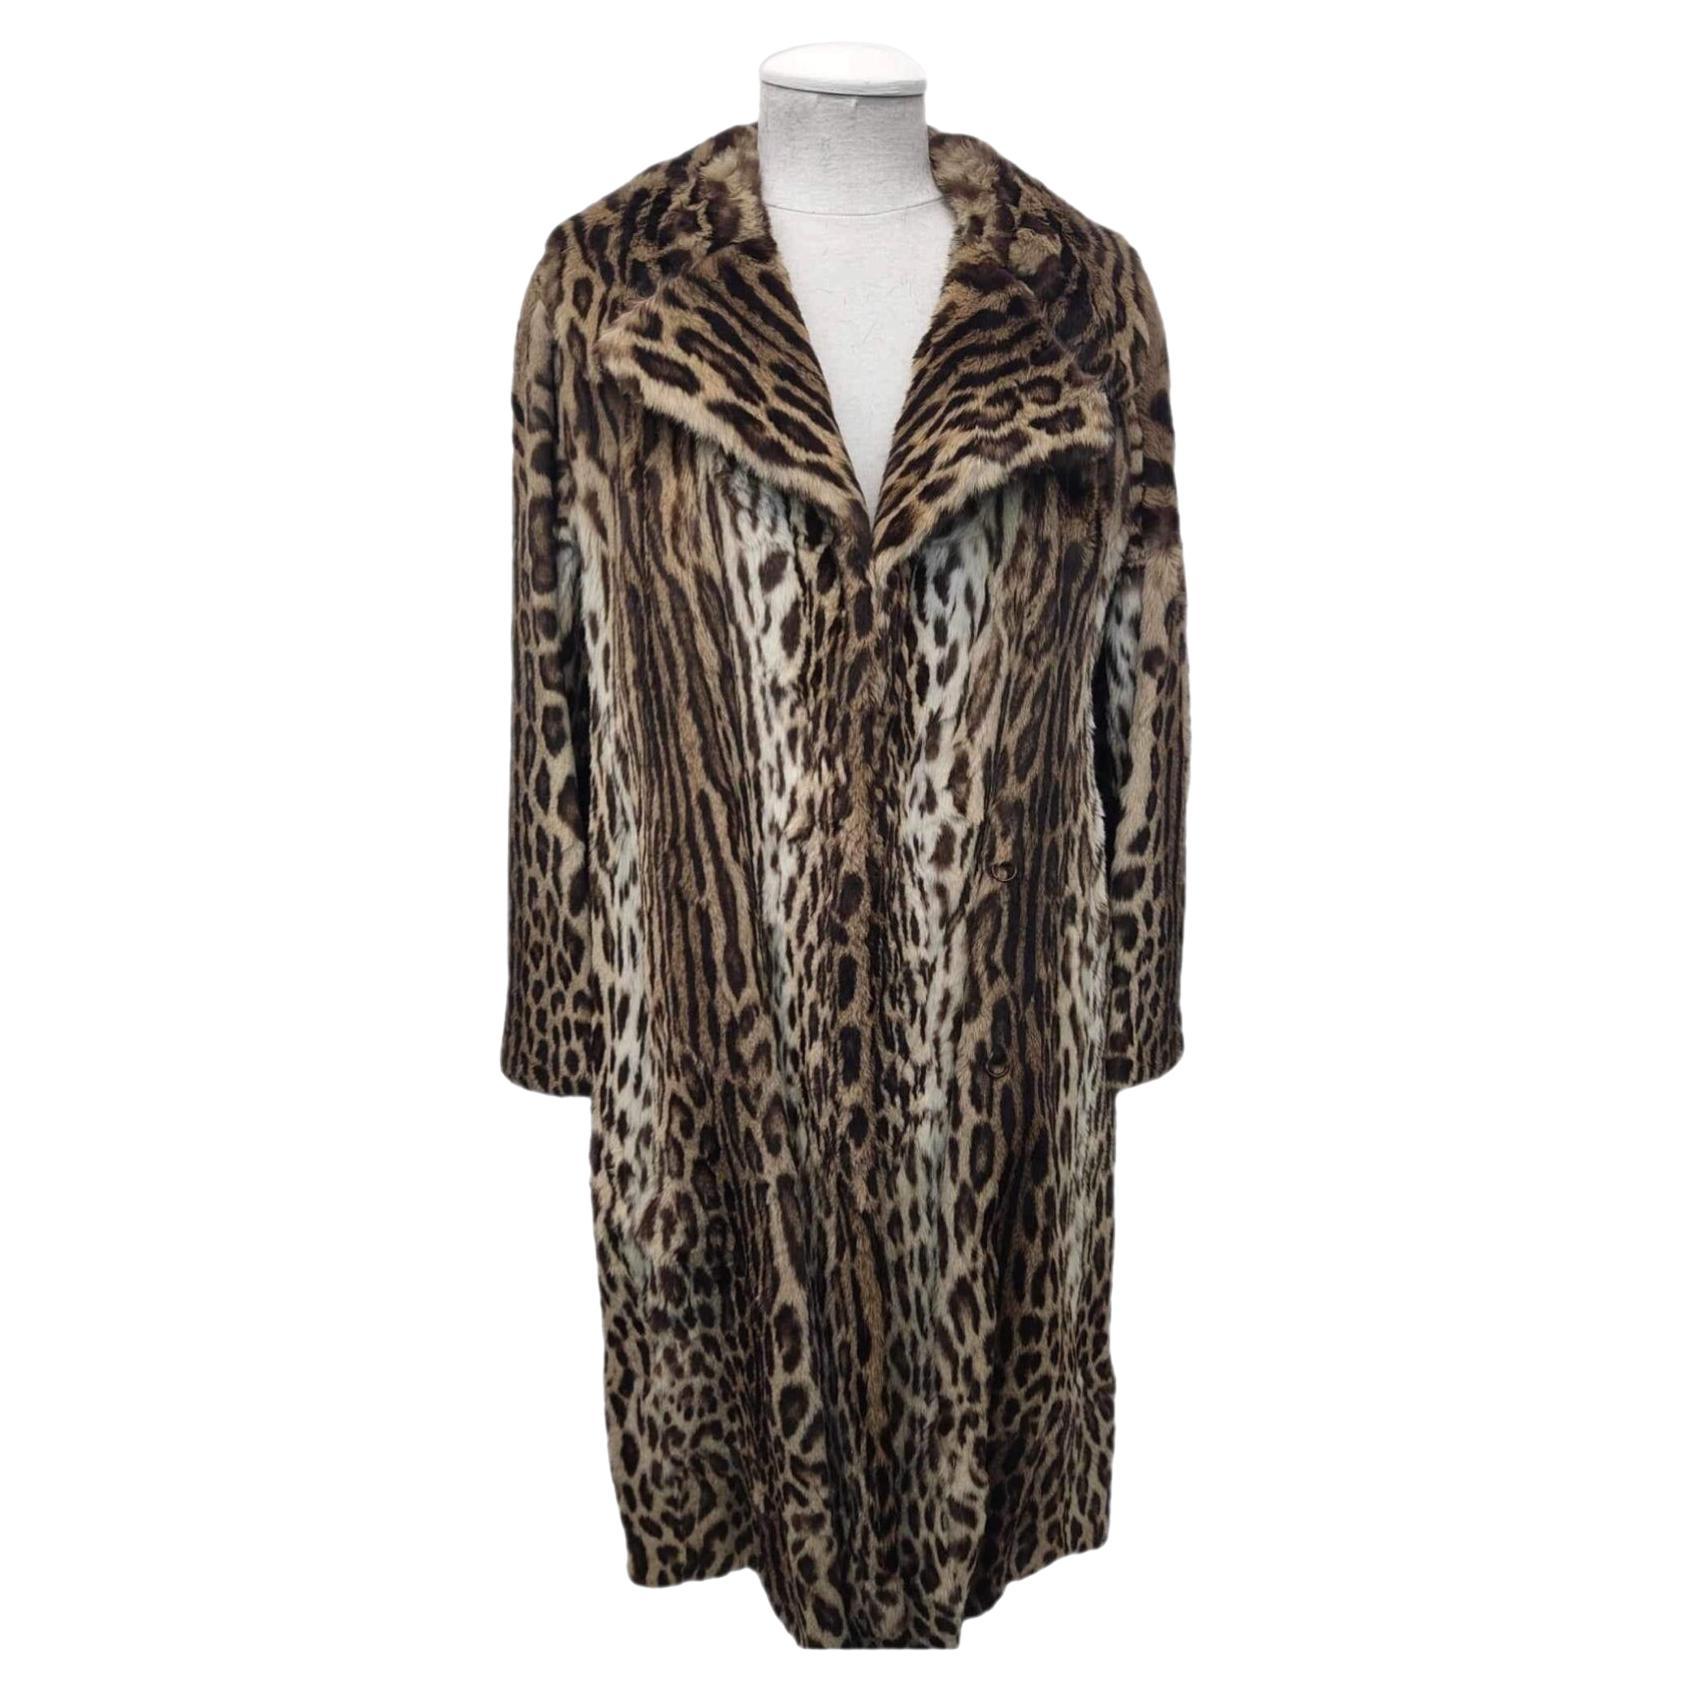 Mint Vintage Christian Dior ocelot fur coat size 12*****Vault unused no defects For Sale